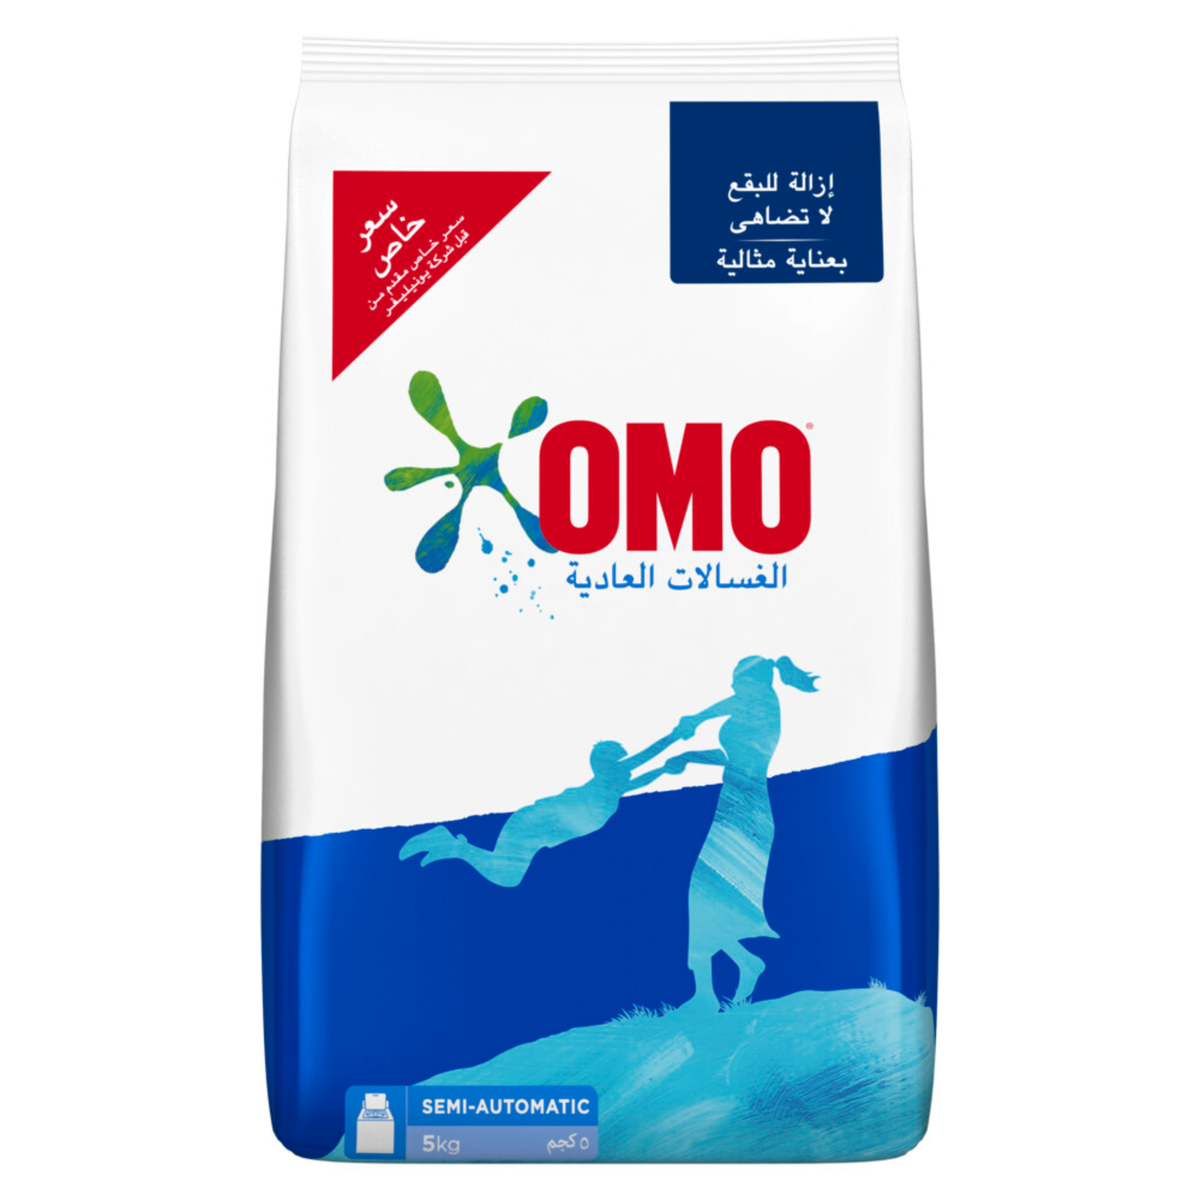 OMO Semi Automatic Washing Powder 5kg